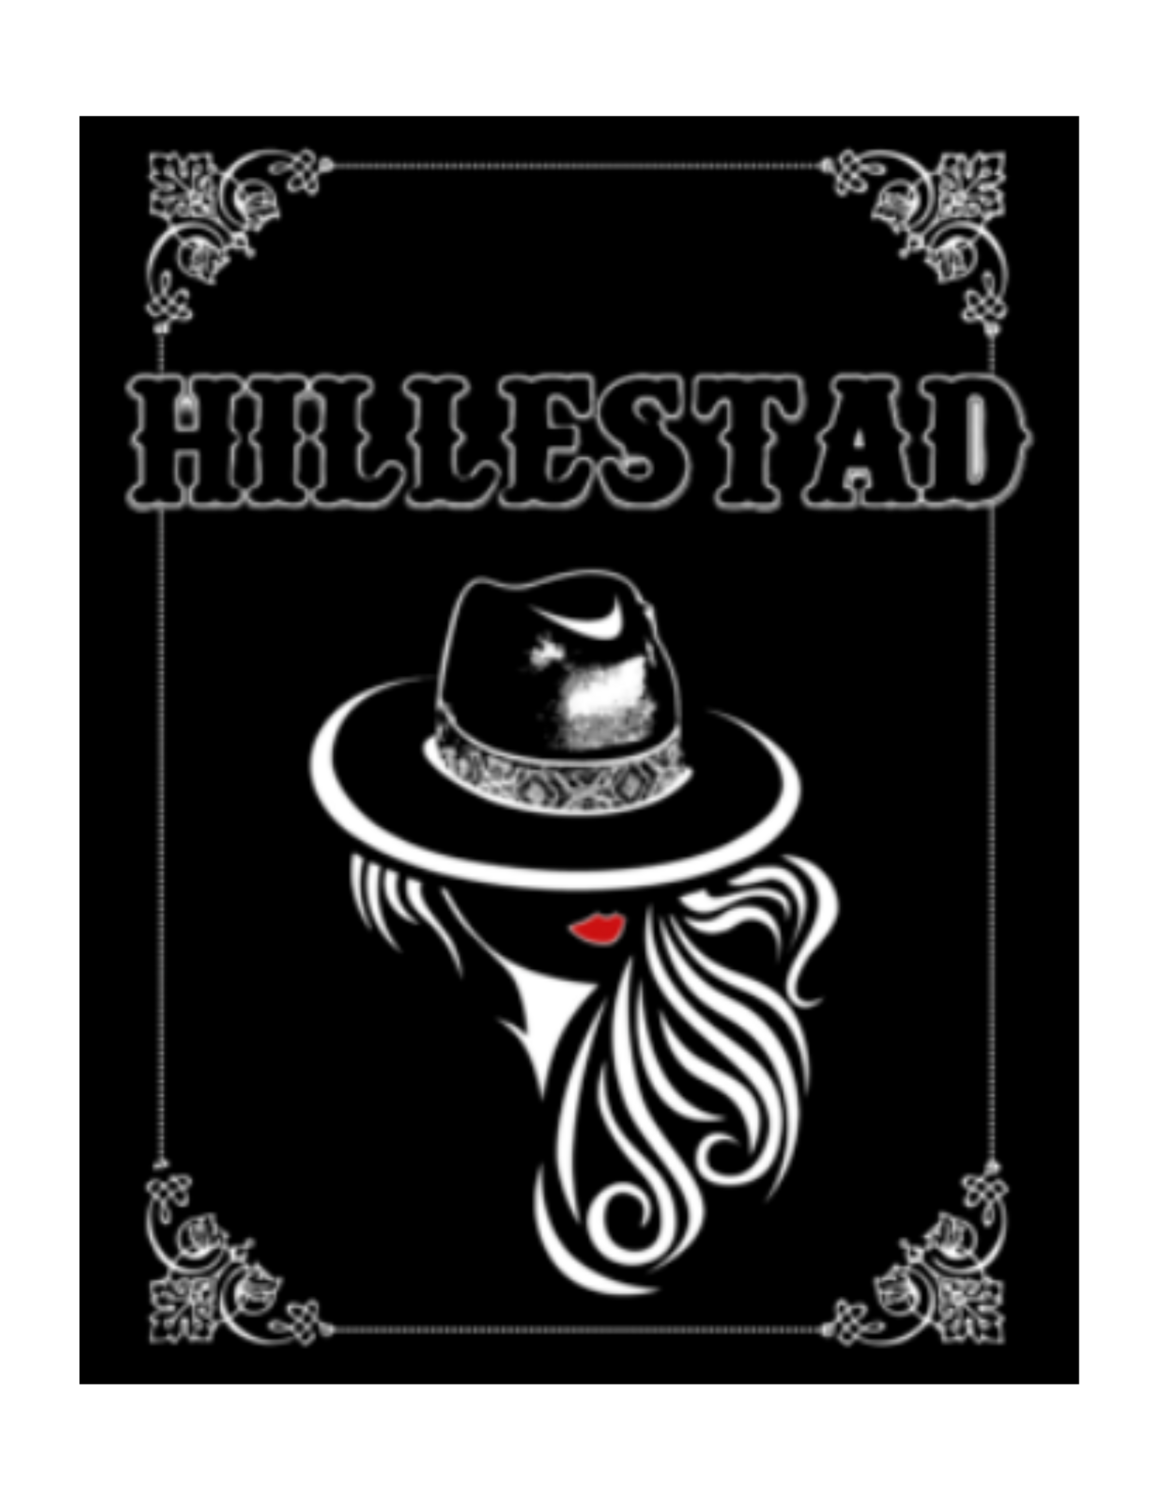 Black Hillestad Sticker